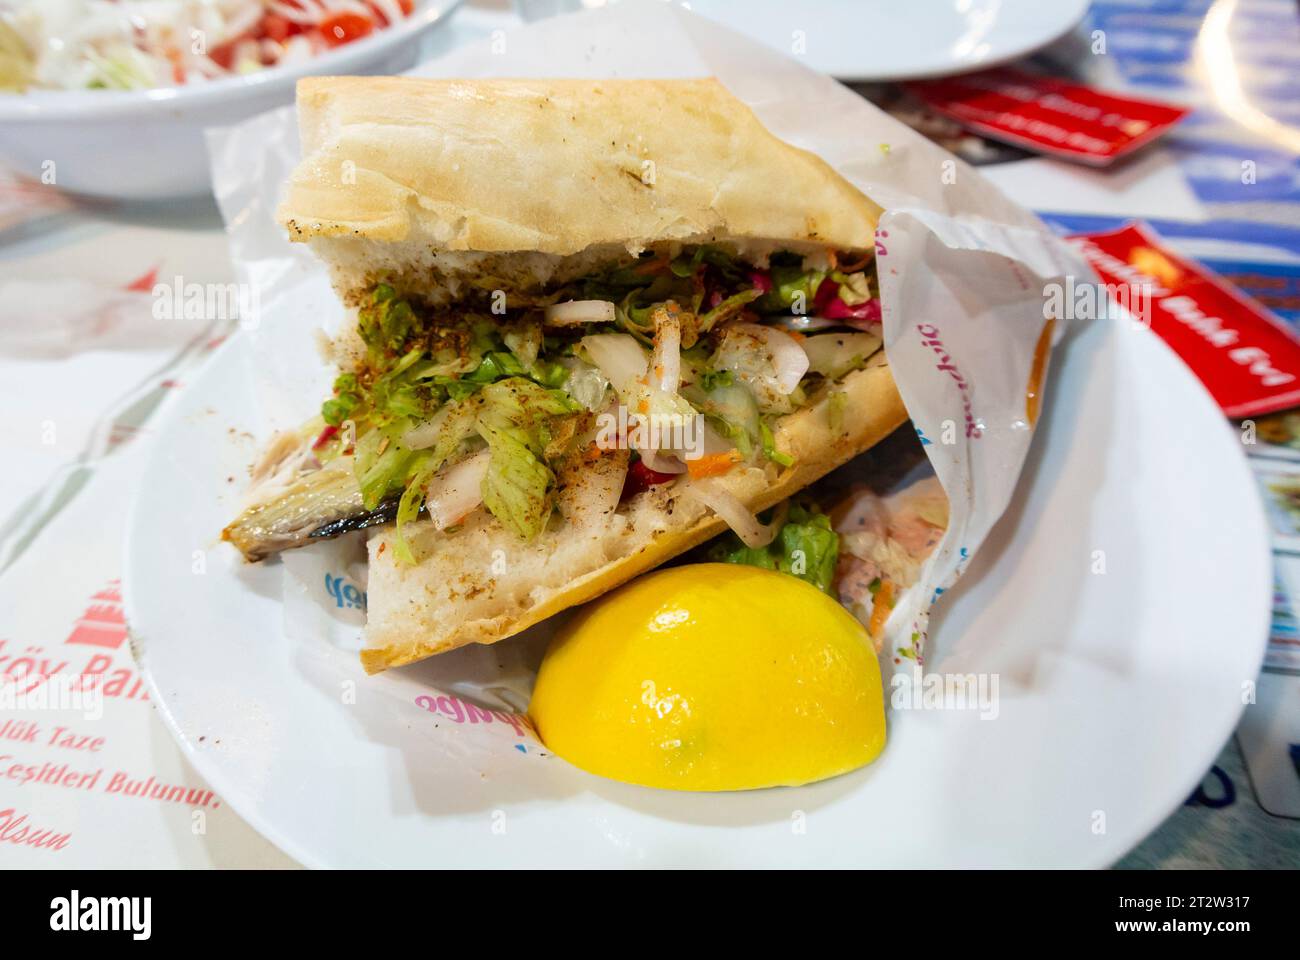 Istanbul, Turchia, Balık ekmek è un popolare Street food della cucina turca. Si tratta di un panino di un filetto di pesce fritto o grigliato (tipicamente sgombro). Foto Stock